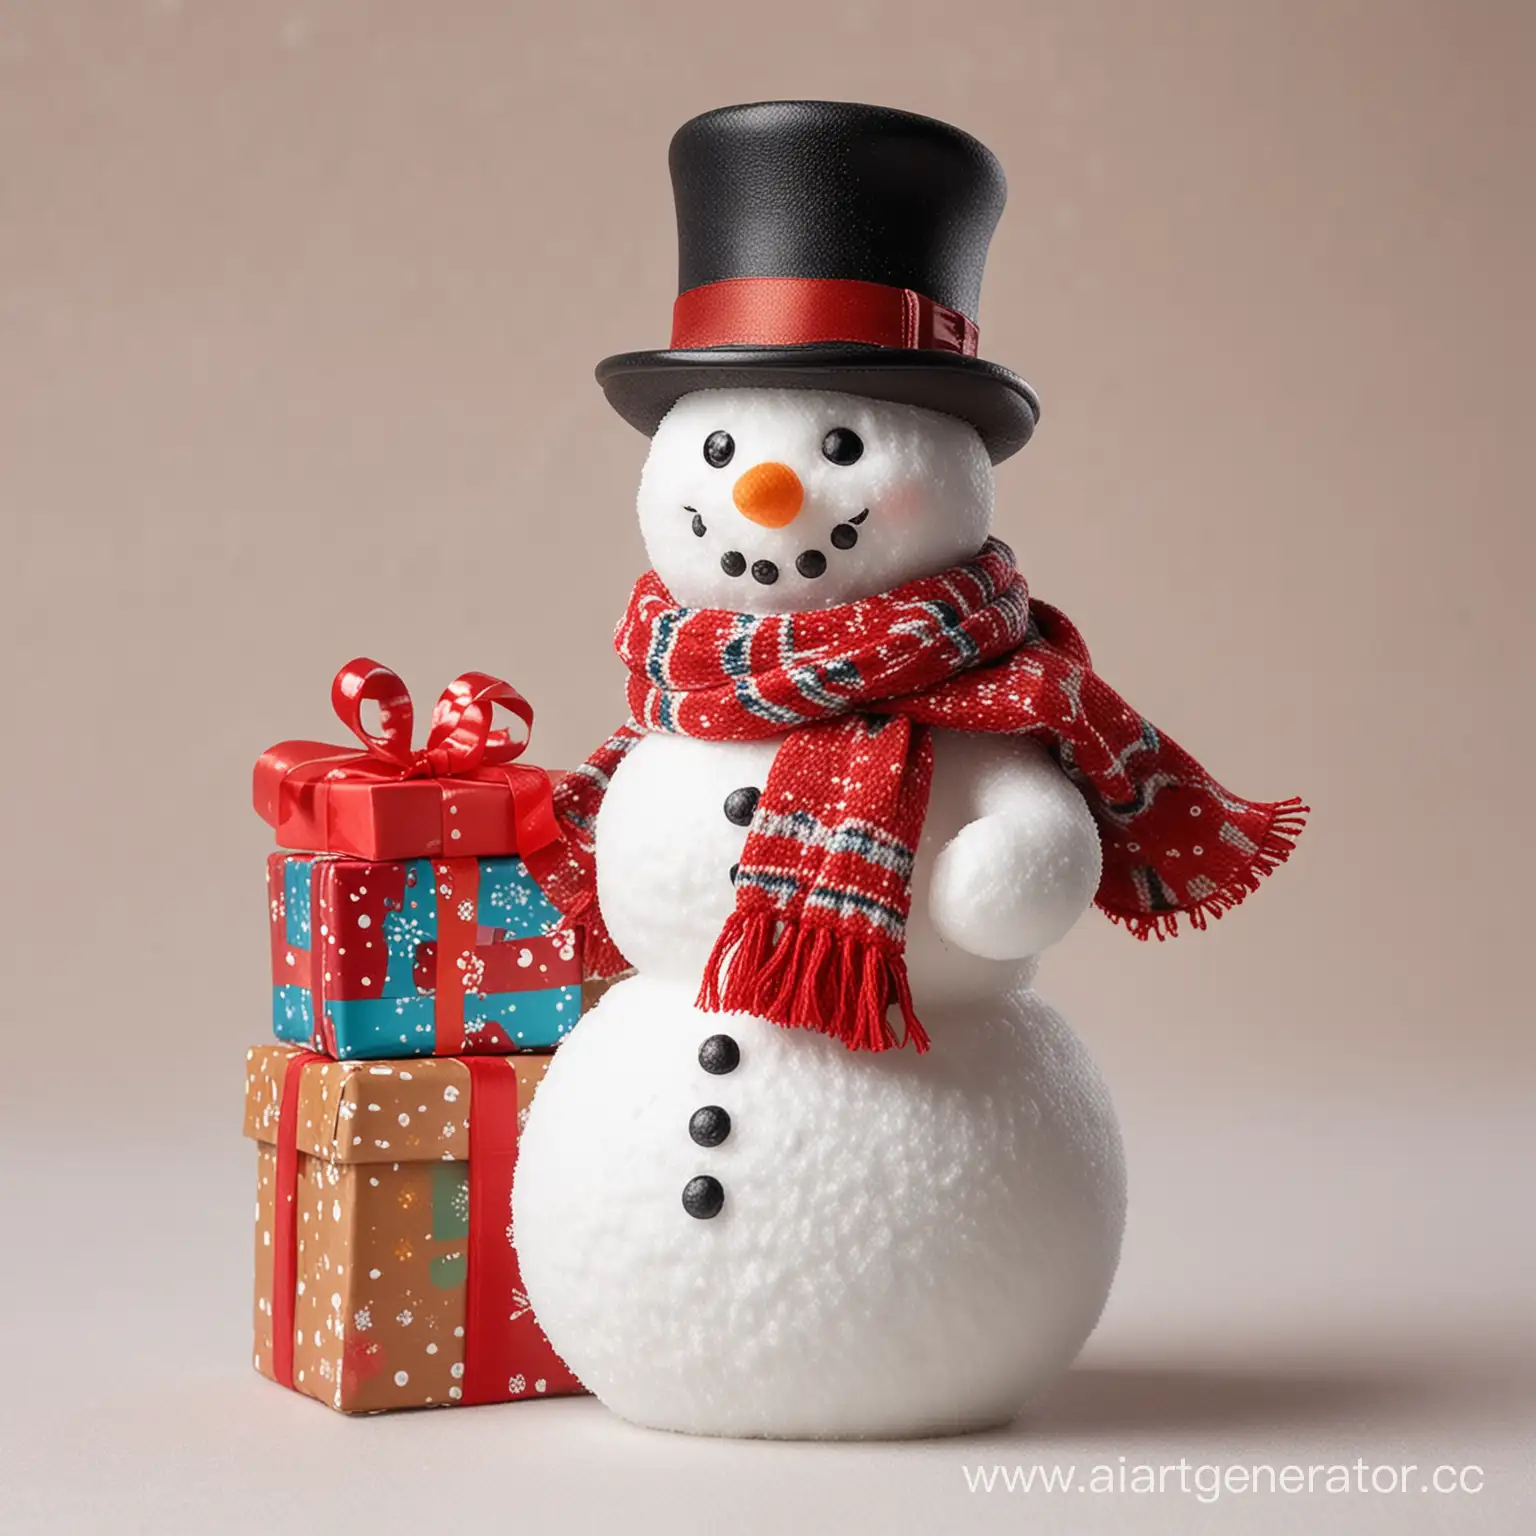 Фигурка снеговика в  шляпе, с шарфом, с подарками в руке